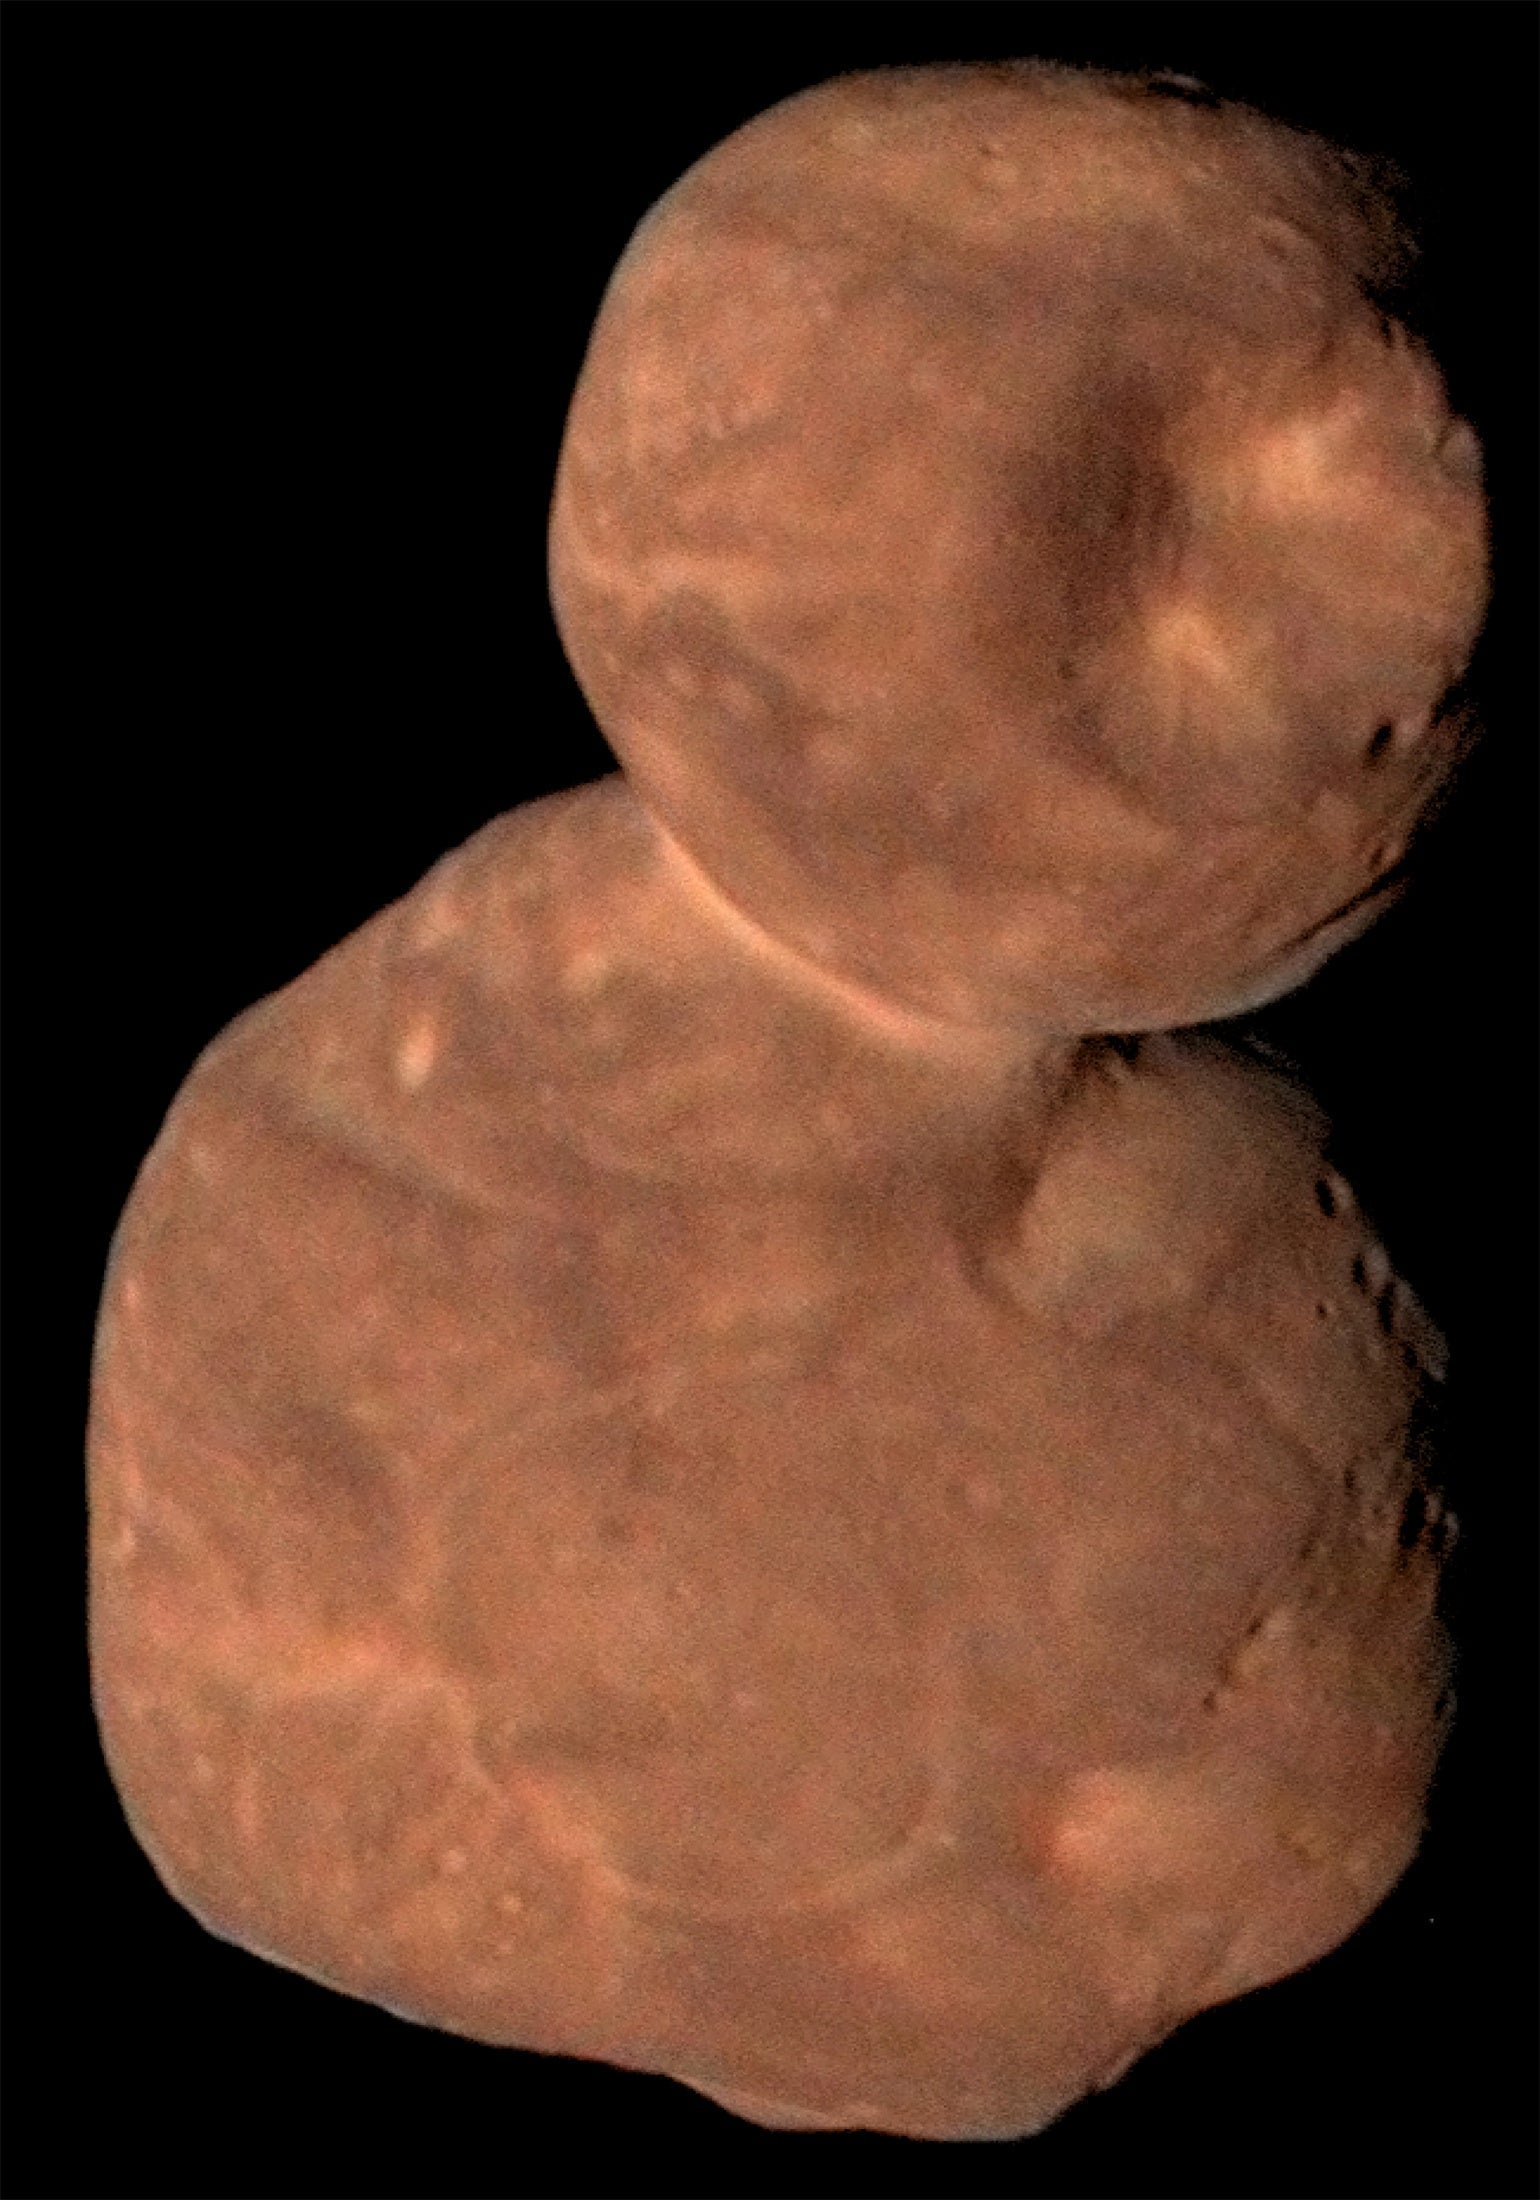 The Kuiper Belt object Arrokoth explored by NASA’s New Horizons